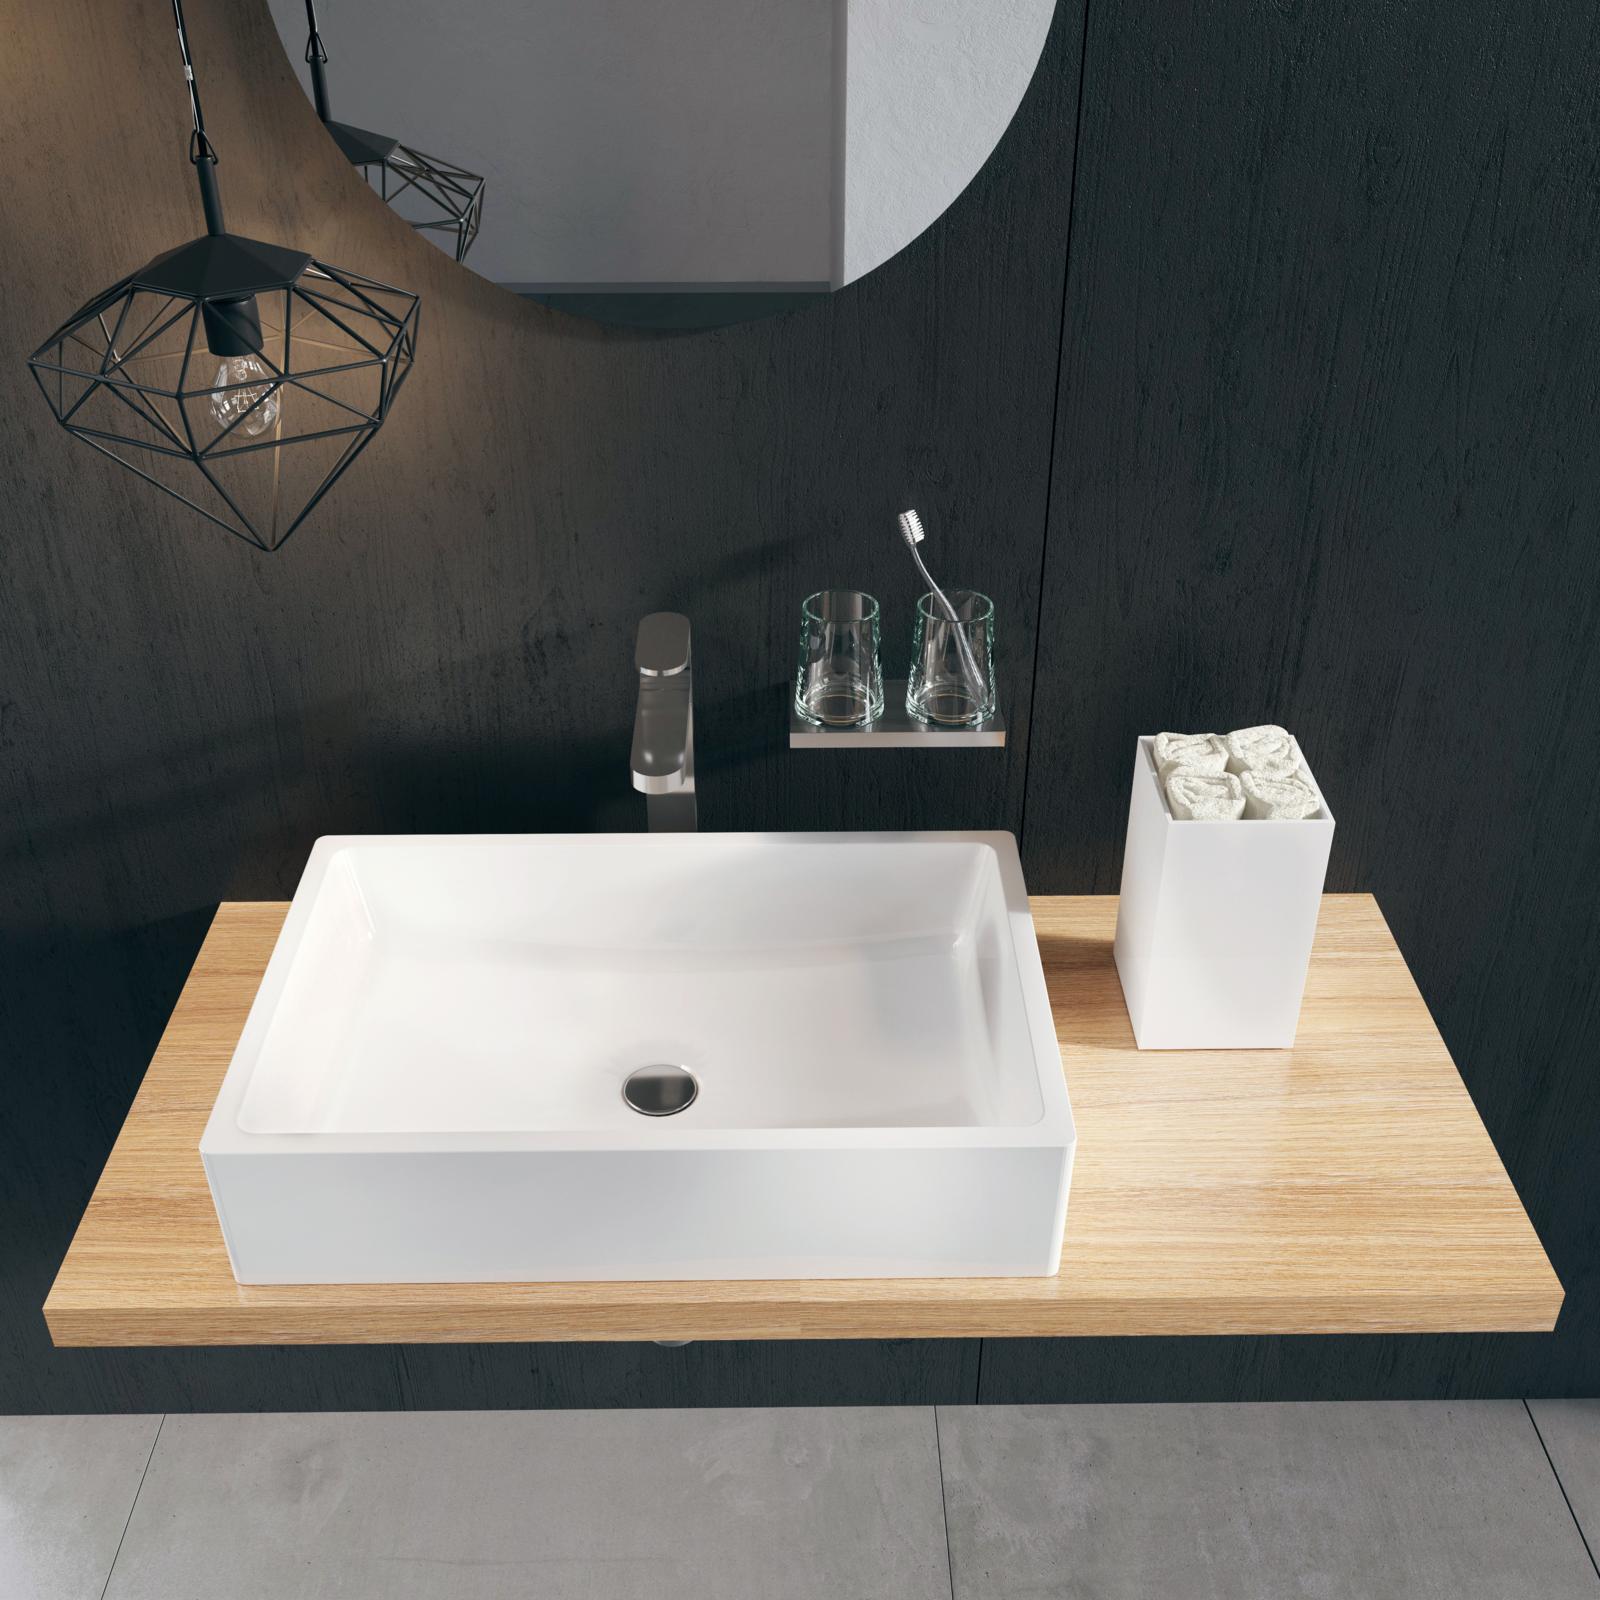 A Formy mosdó mosdópultra ültethteő, modern és elegáns szaniter, amely helyet spórol neked a fürdőszobában.